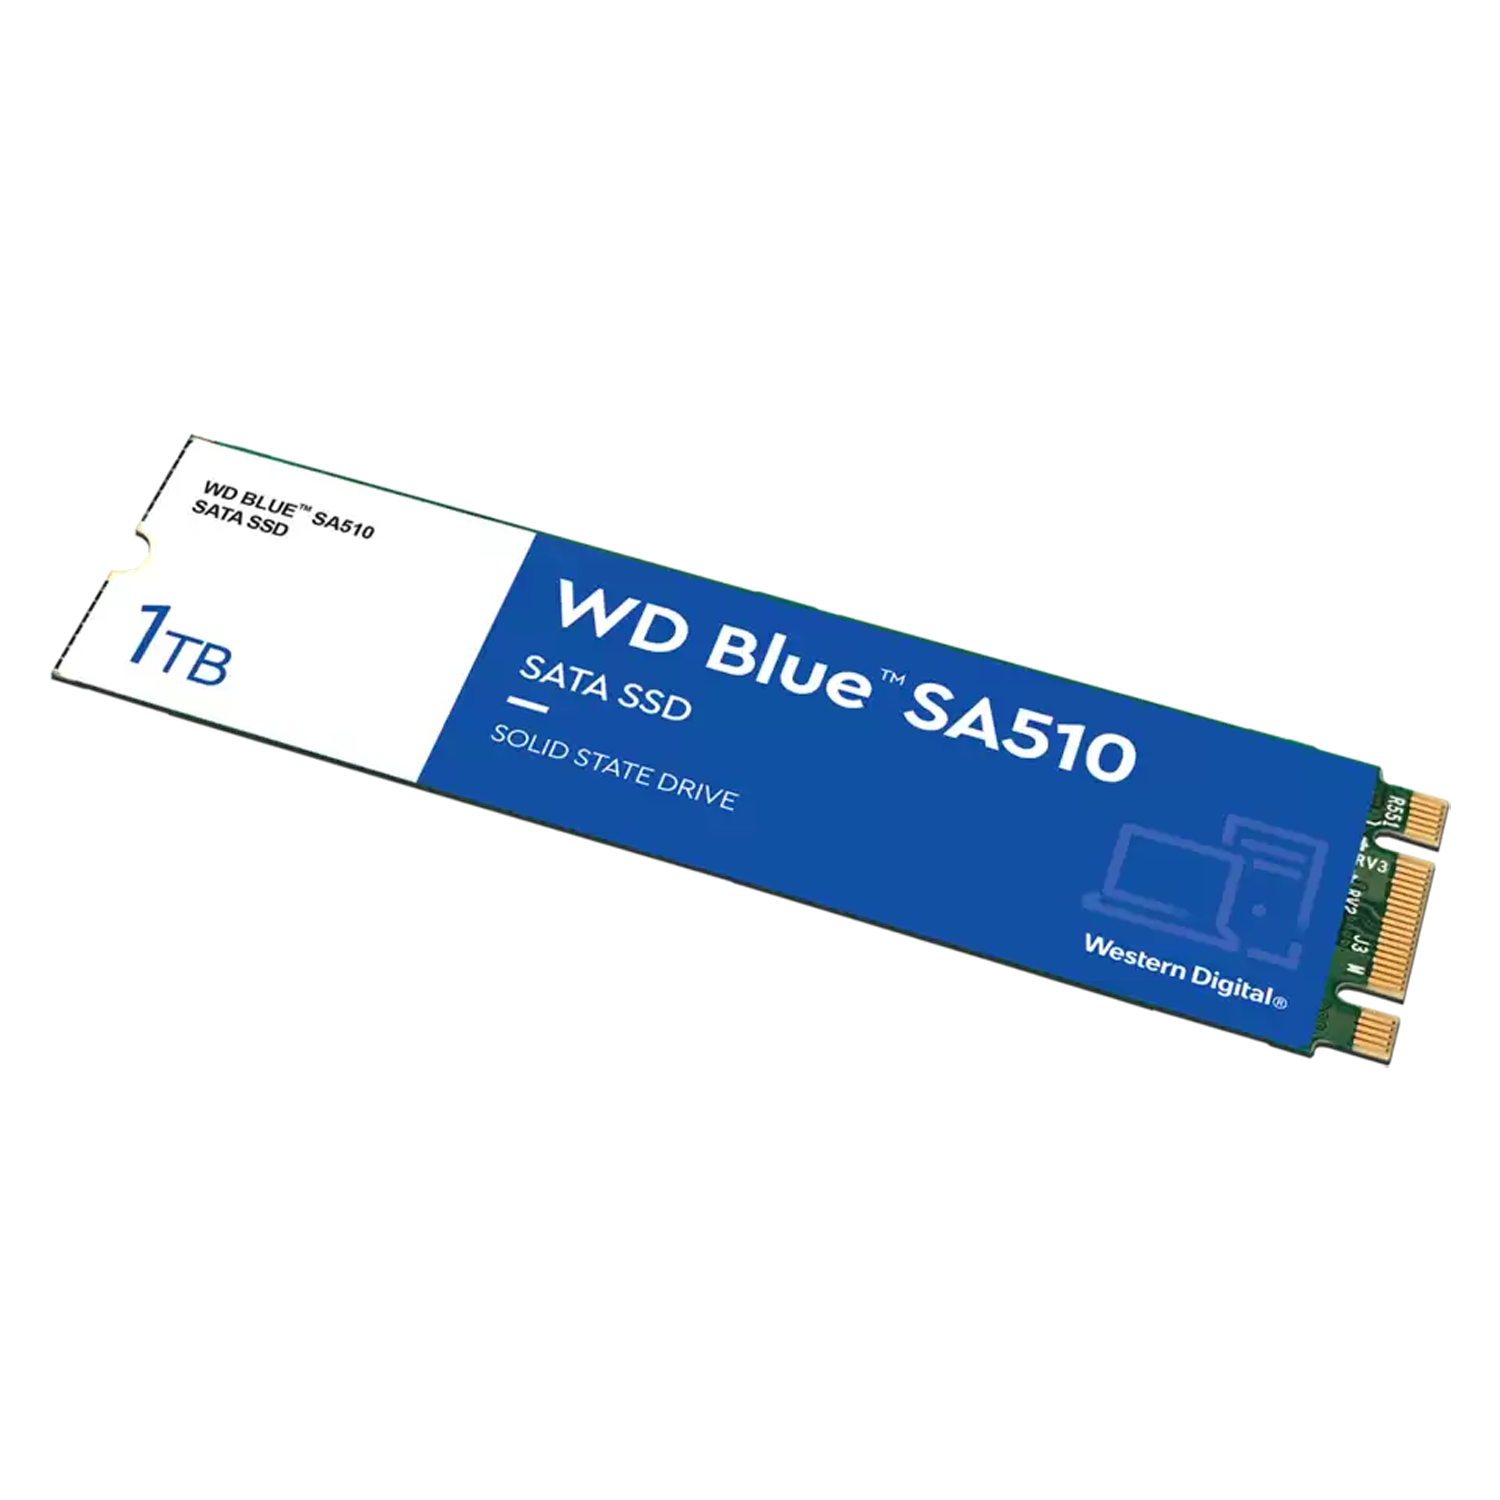 SSD M.2 Western Digital SA510 Blue 1TB / SATA 3 - (WDS100T3B0B)
